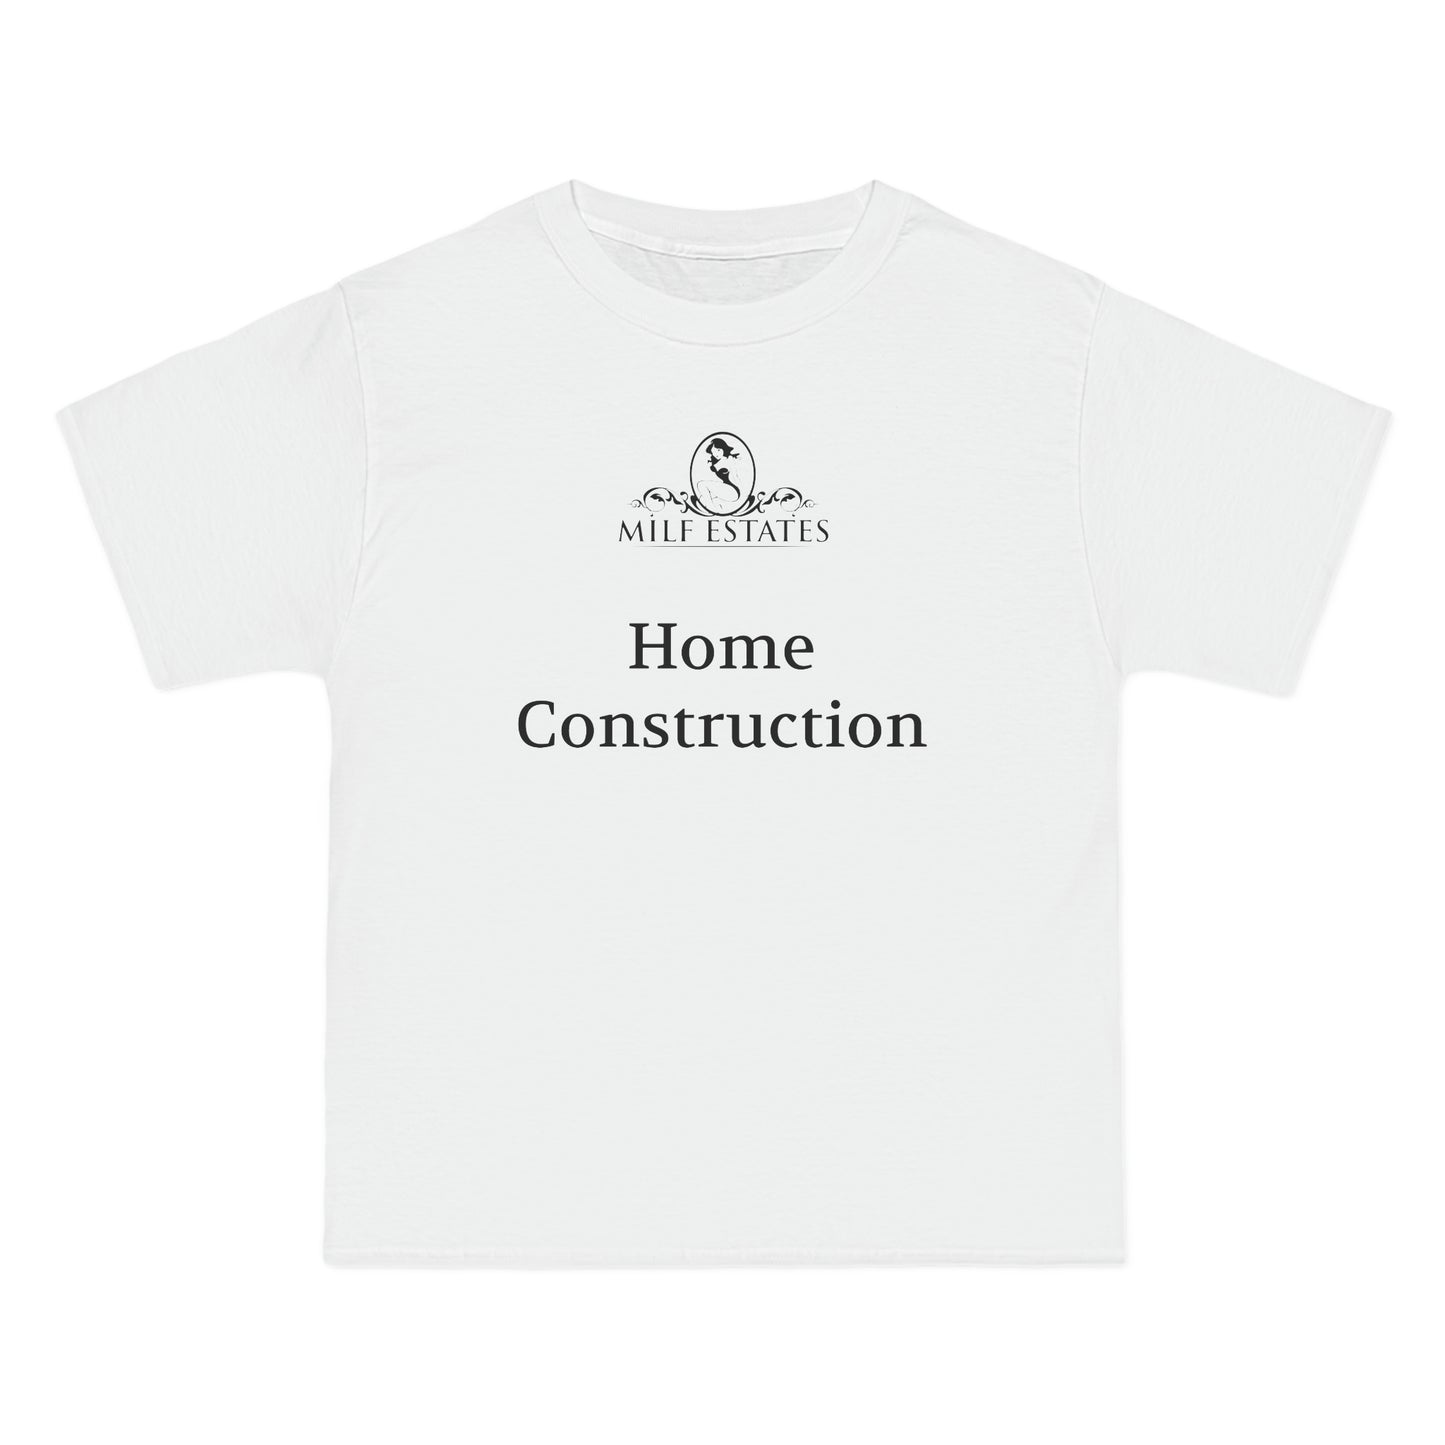 MILF ESTATES Home Construction (logo)